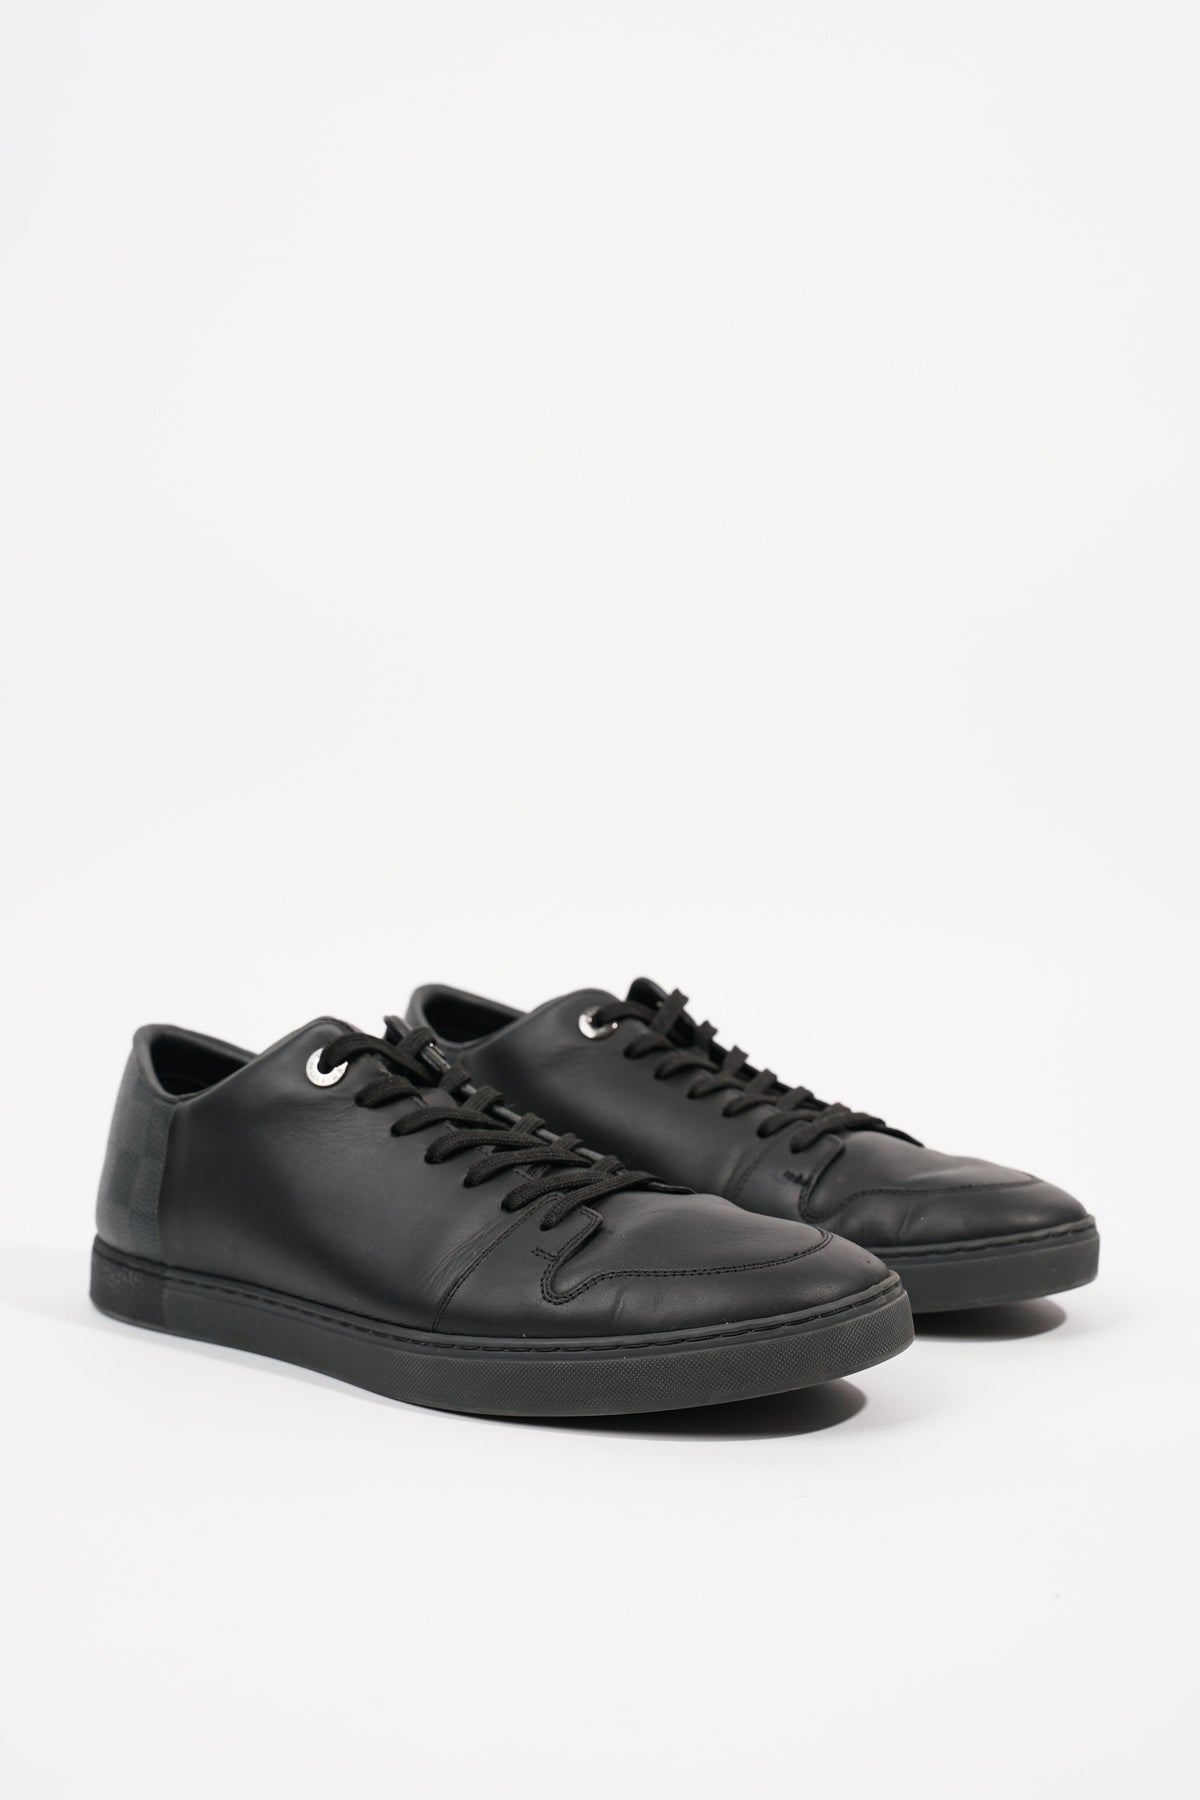 Louis Vuitton, Shoes, Louis Vuitton Men Shoes Damier Black Leather Buckle  95uk 5us New Never Worn